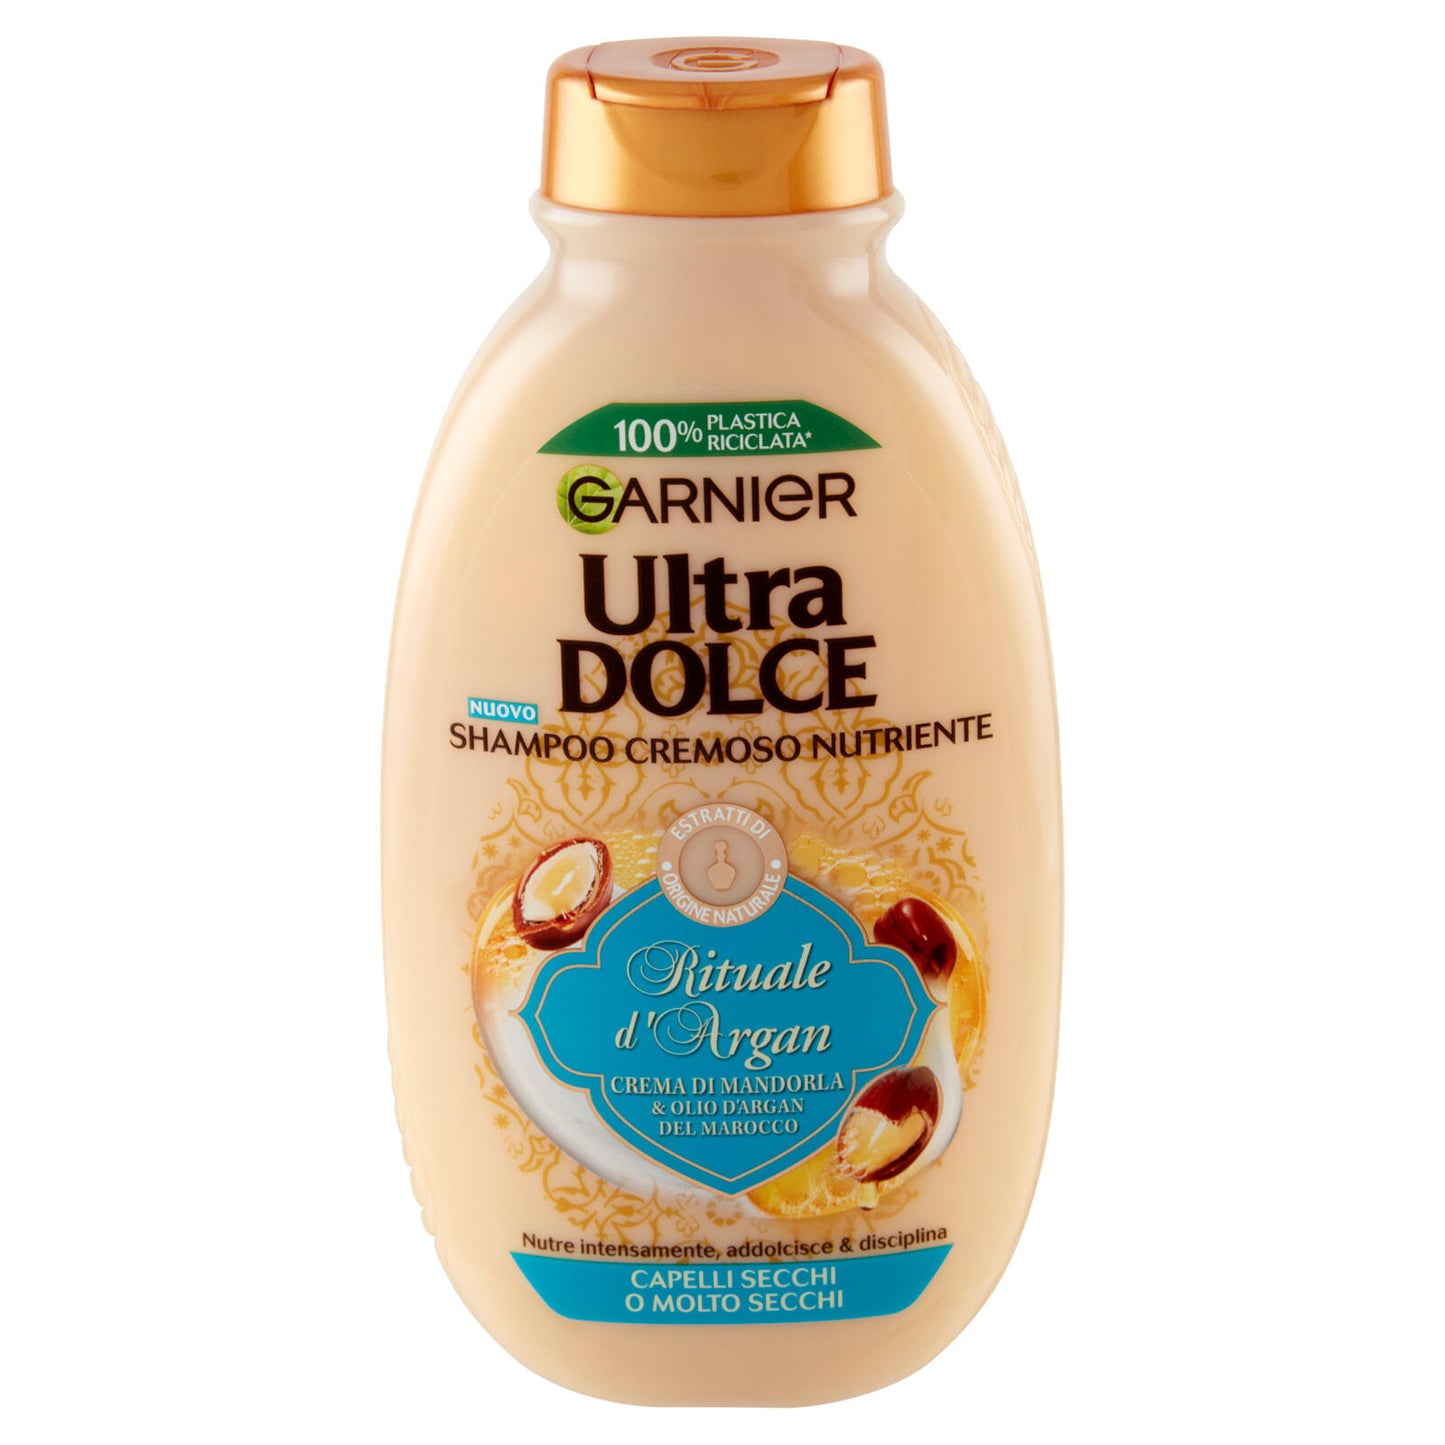 Garnier Ultra Dolce Shampoo con crema di Mandorla e Olio d'argan per capelli molto secchi, 250 ml